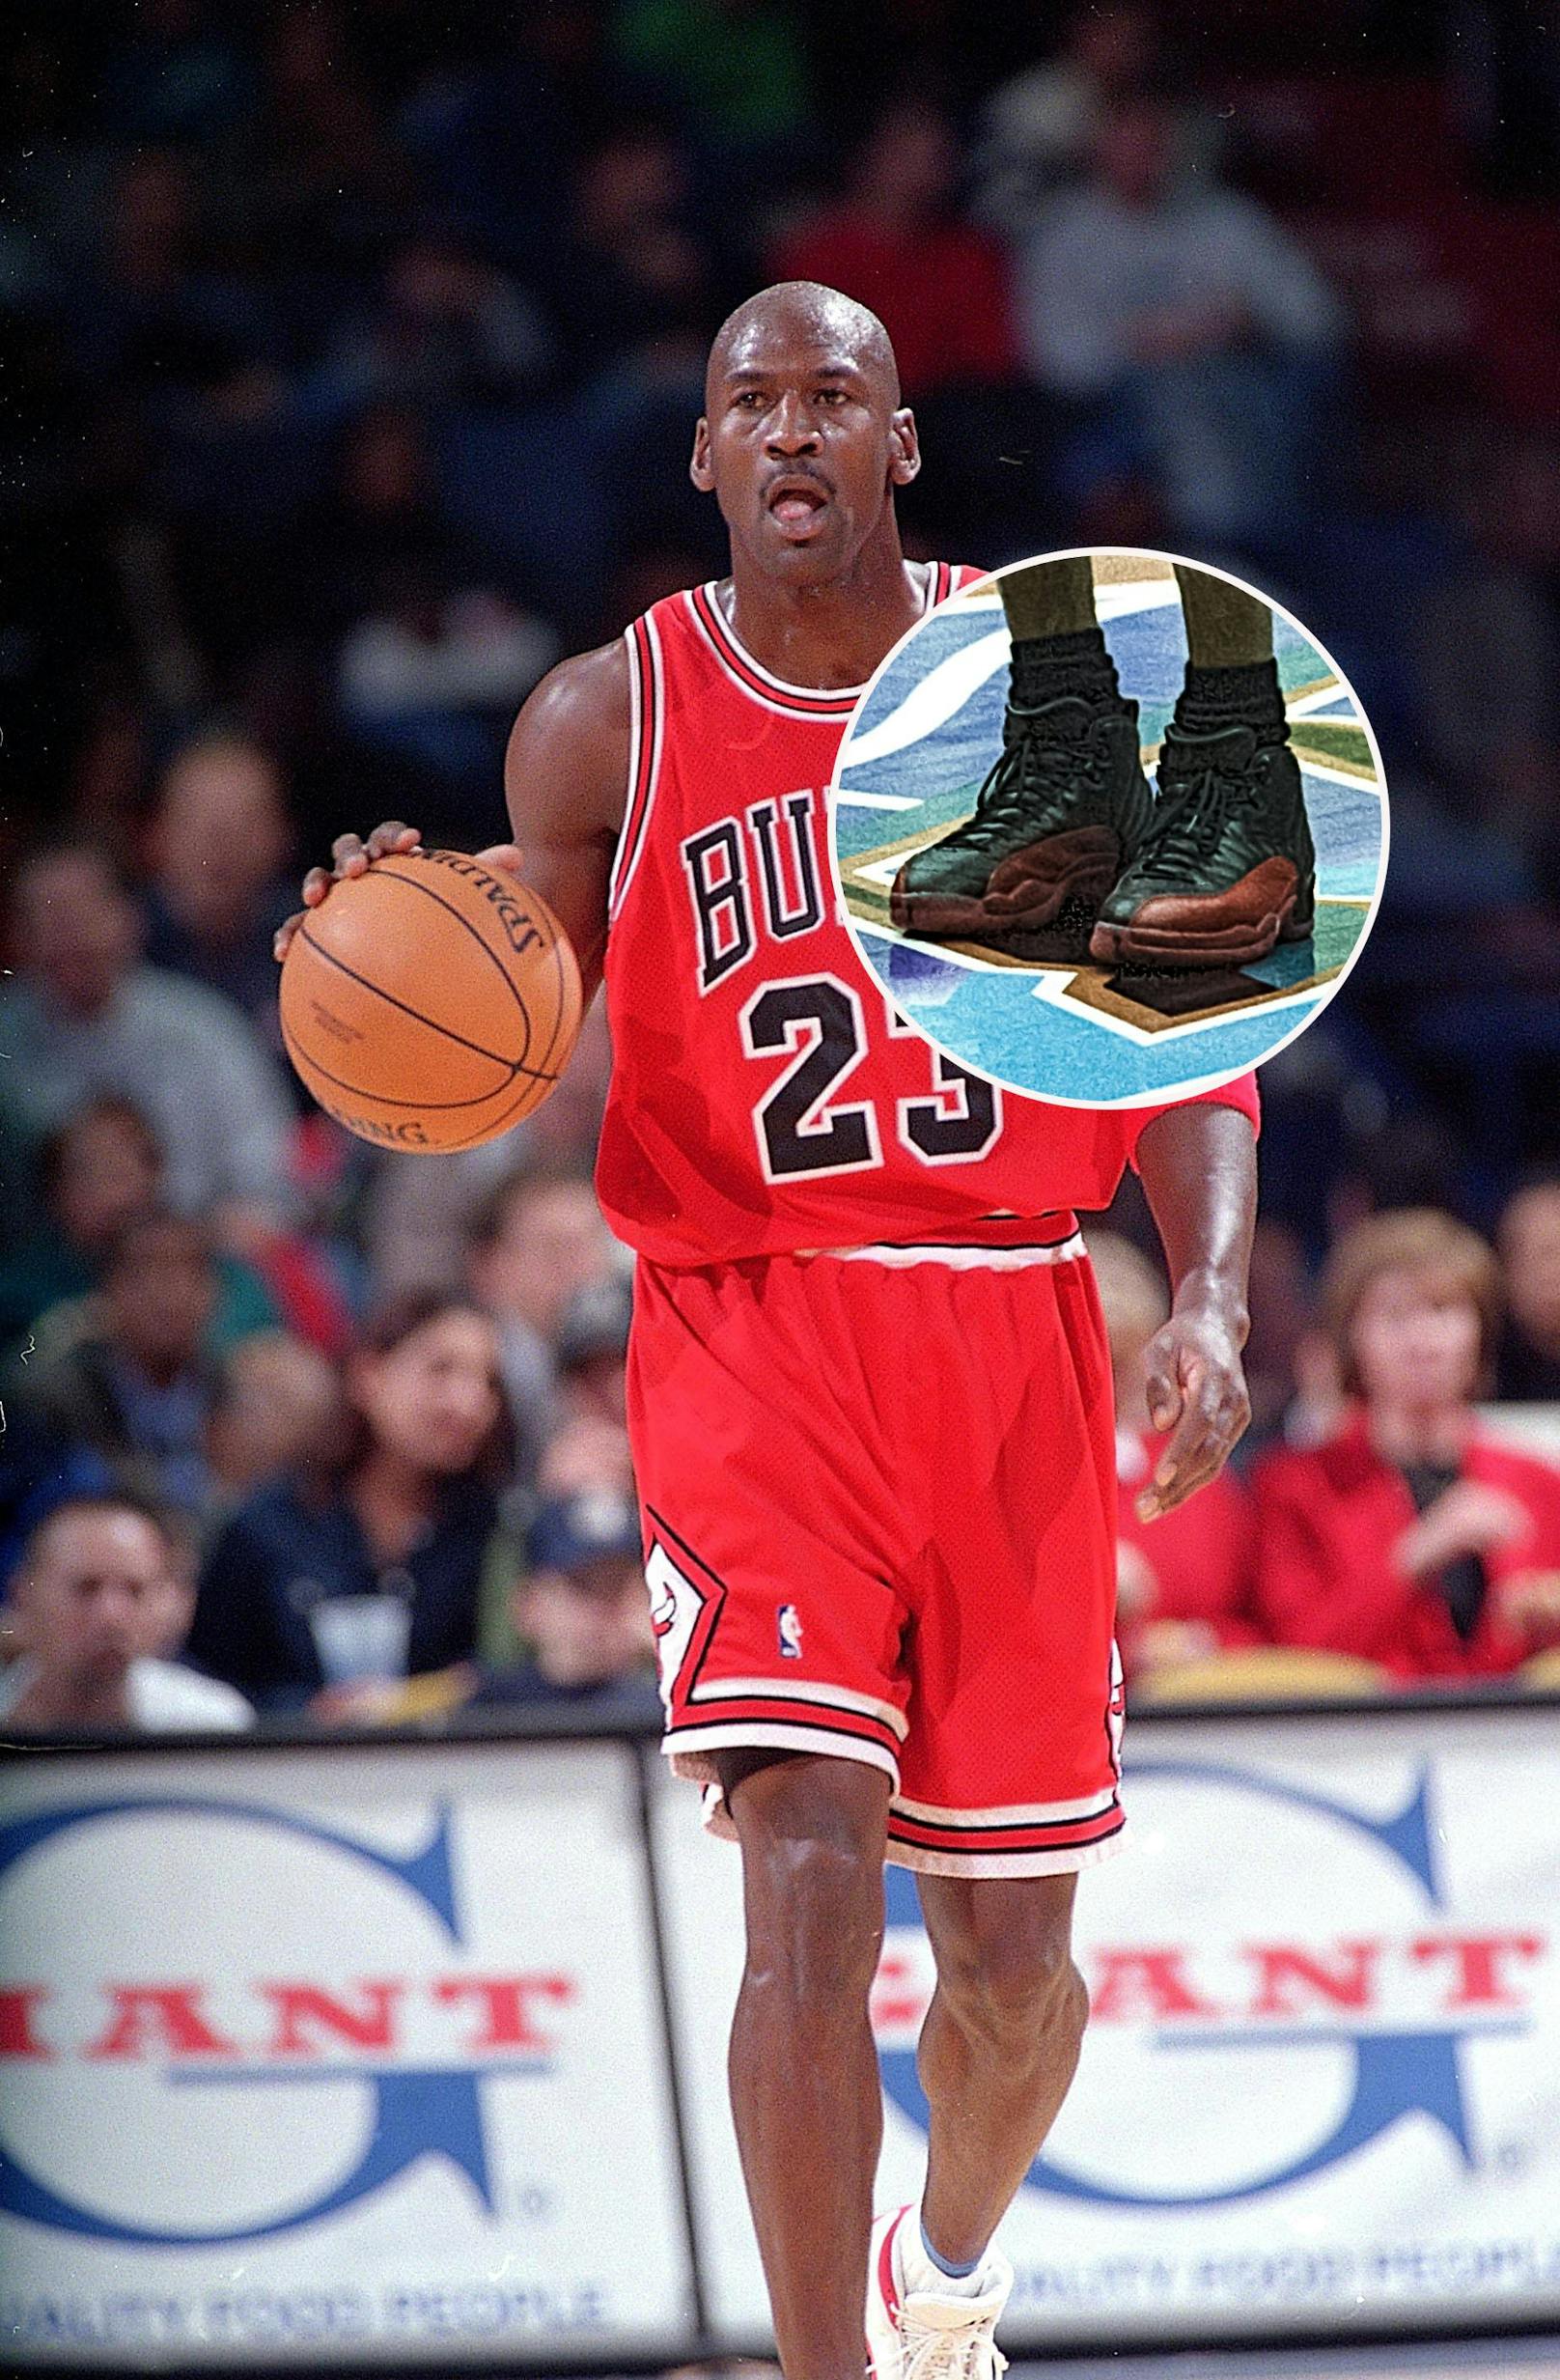 Jordan-Schuhe um gigantische Summe versteigert